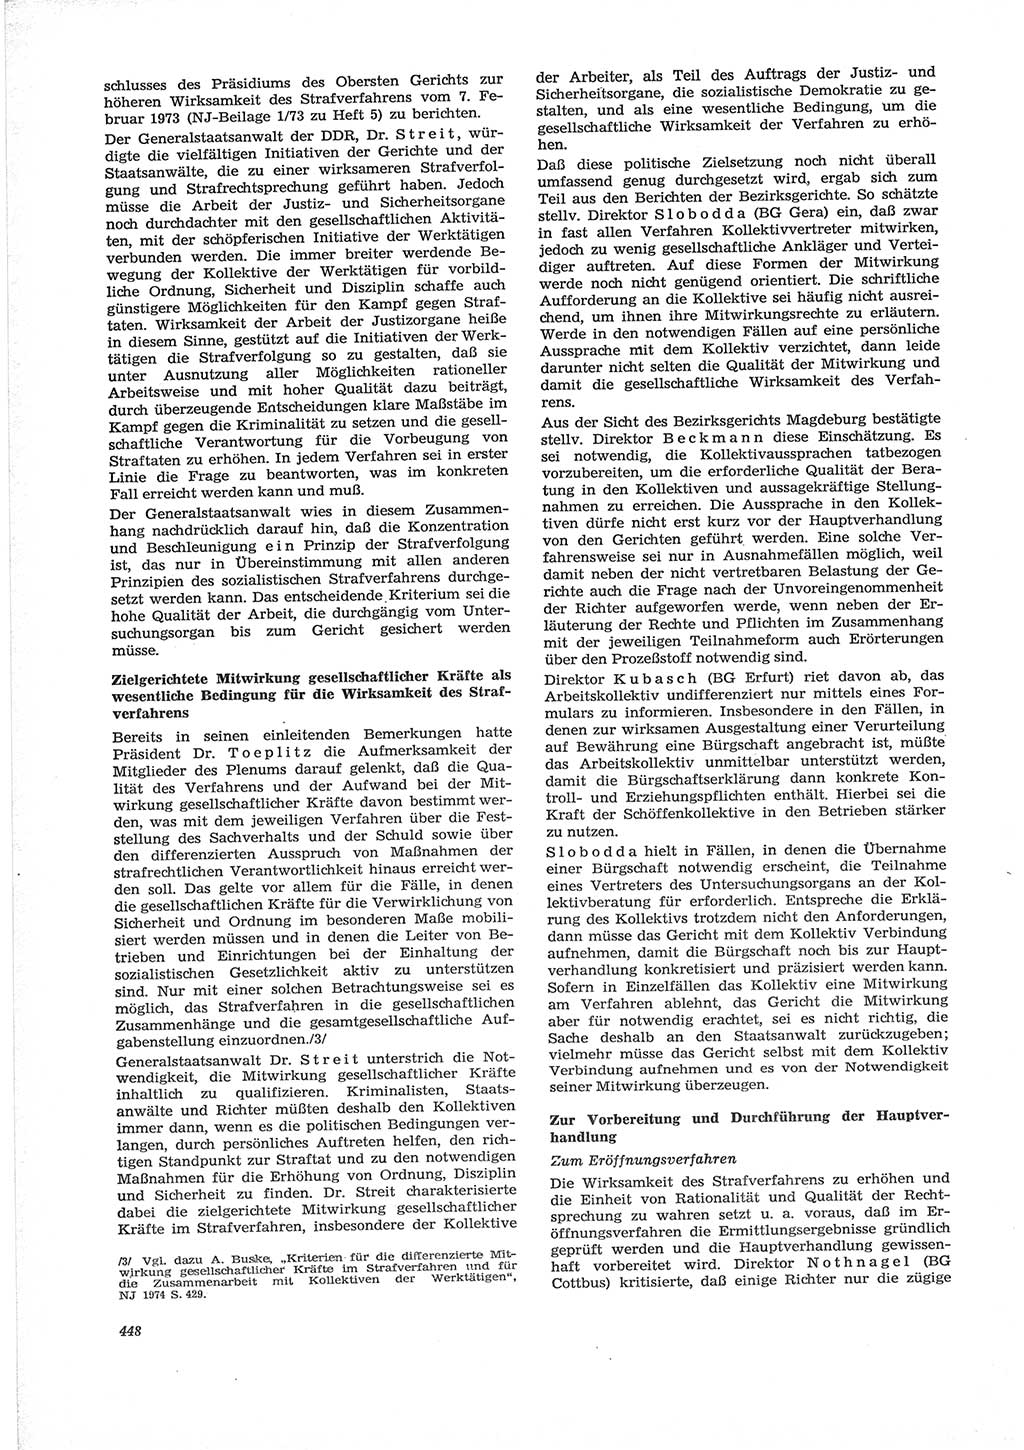 Neue Justiz (NJ), Zeitschrift für Recht und Rechtswissenschaft [Deutsche Demokratische Republik (DDR)], 28. Jahrgang 1974, Seite 448 (NJ DDR 1974, S. 448)